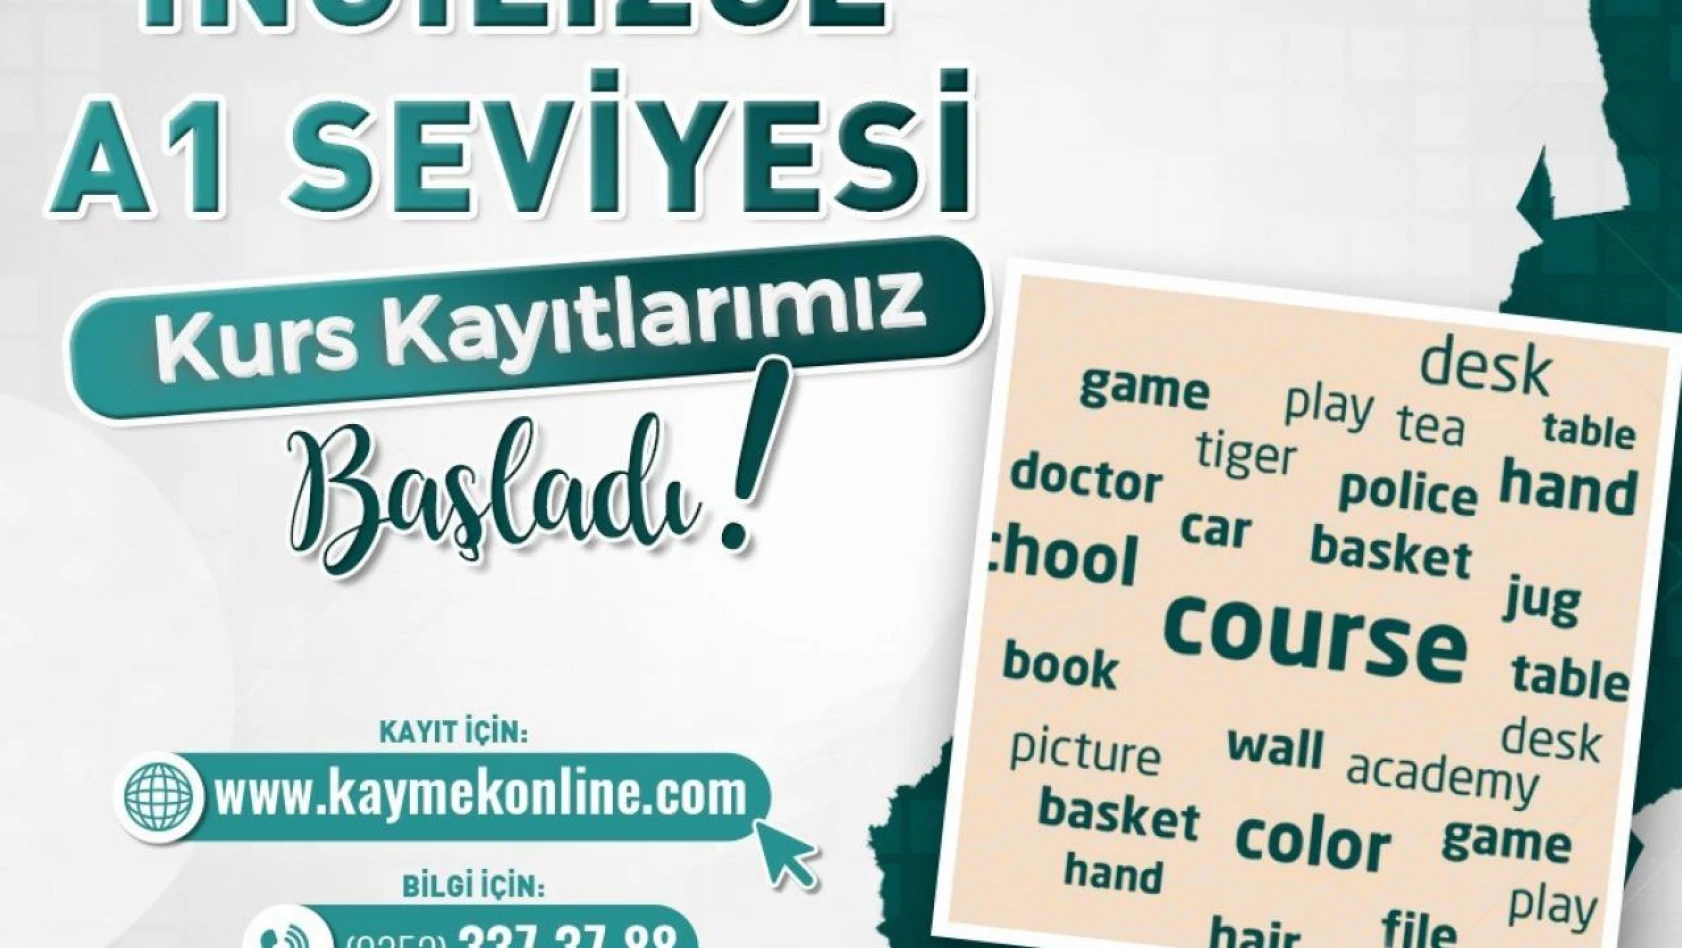 Kayseri'de Yeni Dil Kursları: İngilizce ve Arapça Kayıtları Açıldı